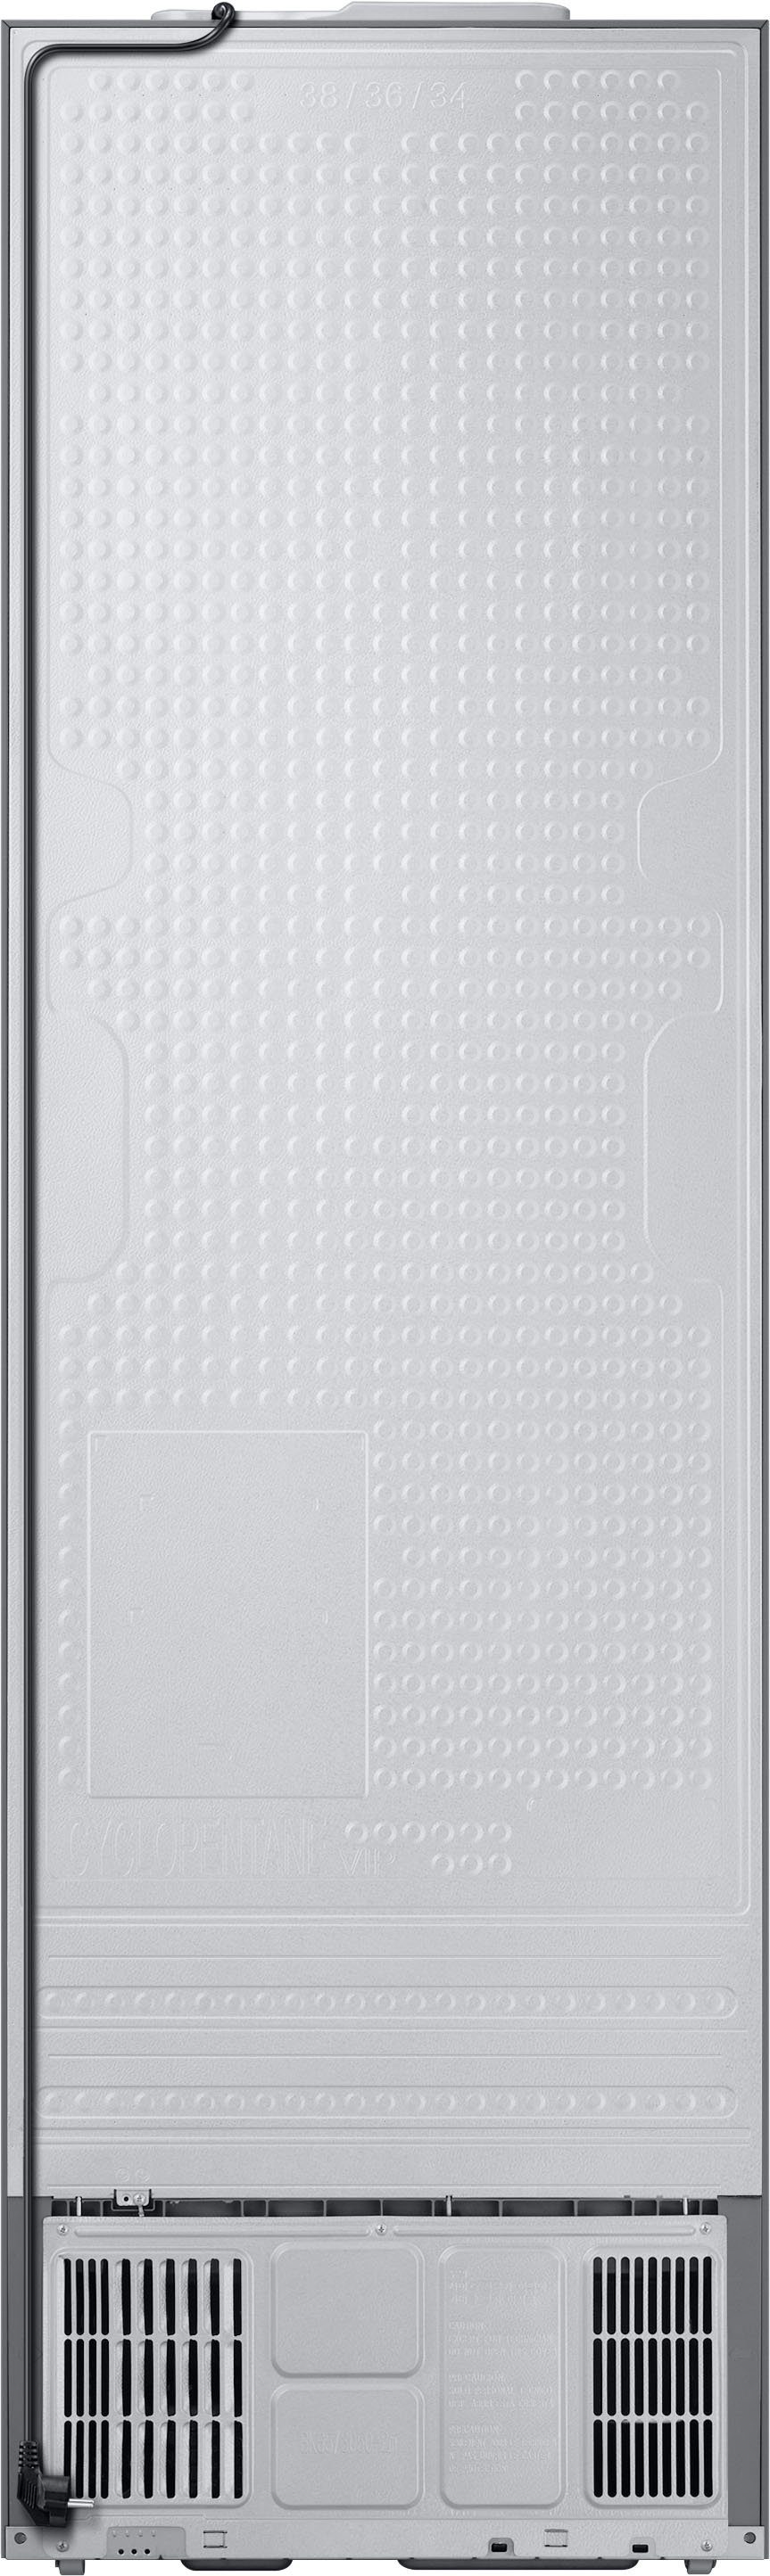 Samsung Kühl-/Gefrierkombination cm RL38A6B6C41, 203 hoch, breit cm Bespoke 59,5